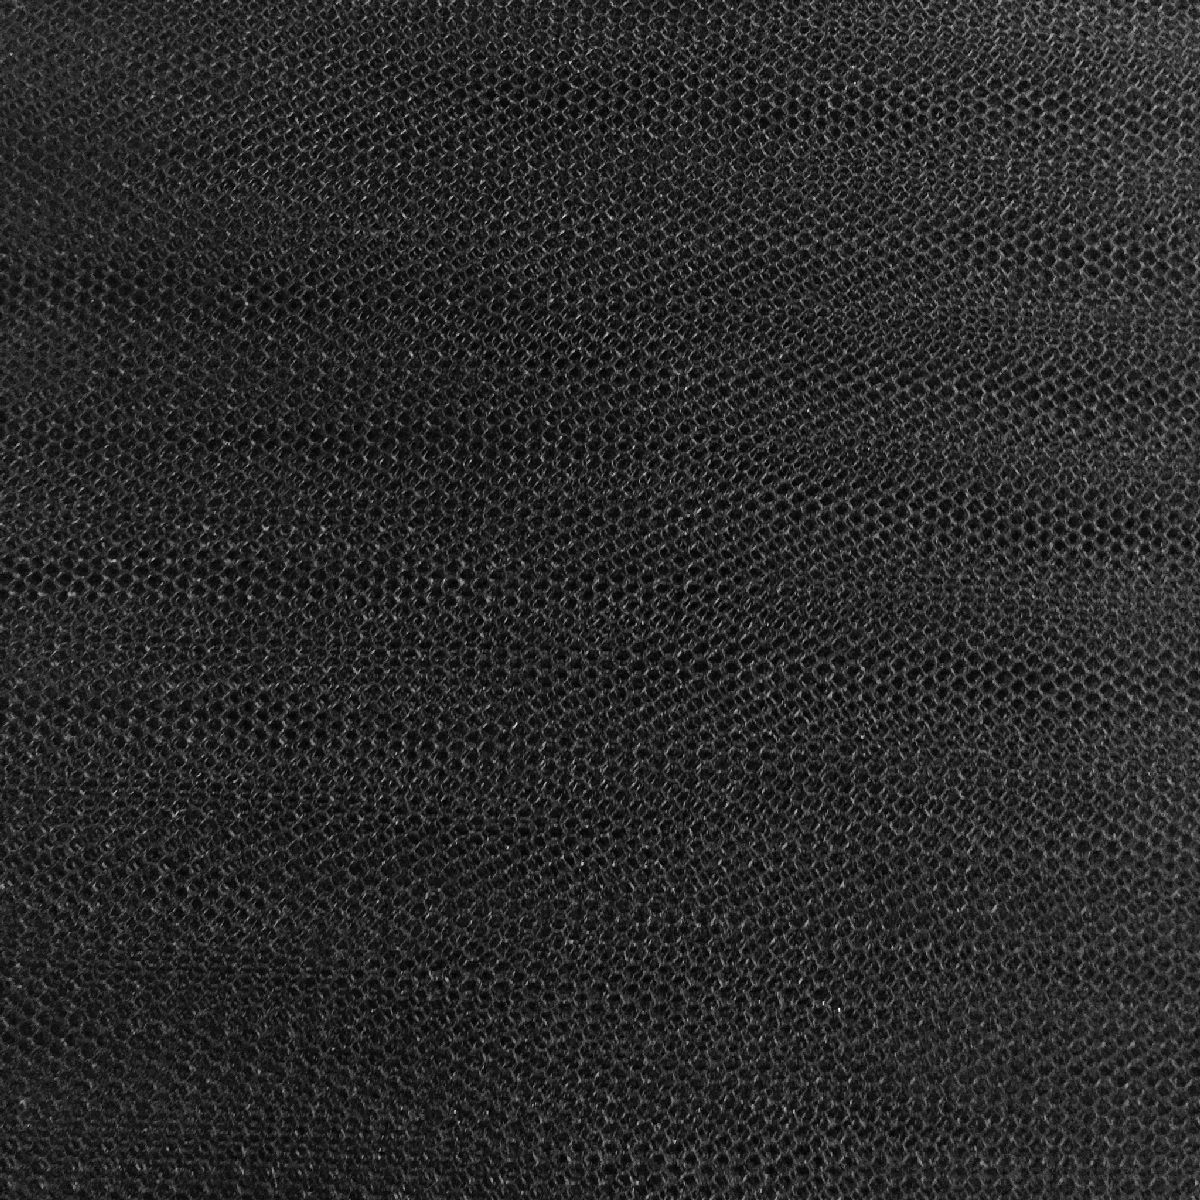 Black Super STIFF Dress Net TUTU FABRIC 150cm